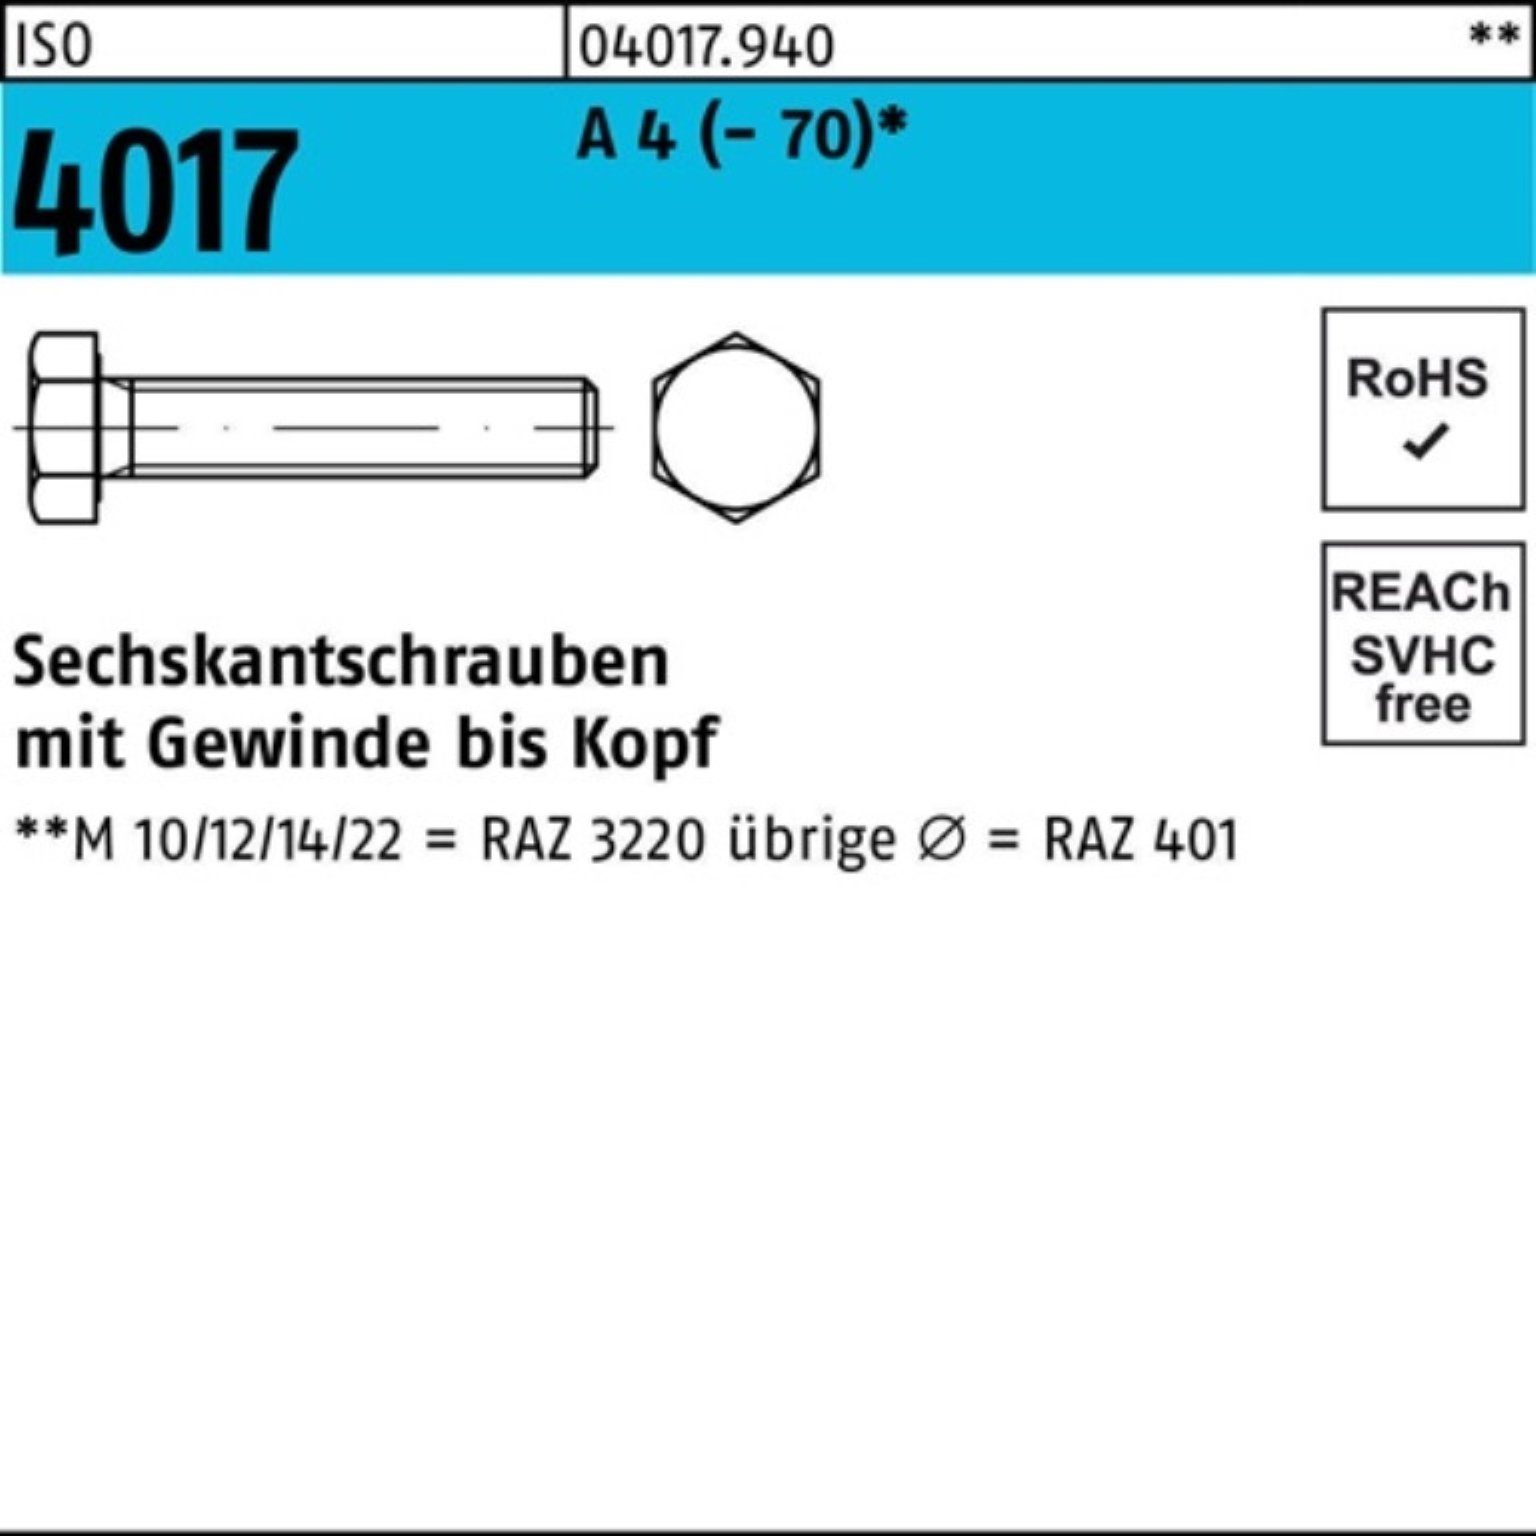 Bufab Sechskantschraube 100er Pack Sechskantschraube ISO 4017 VG M12x 40 A 4 (70) 100 Stück